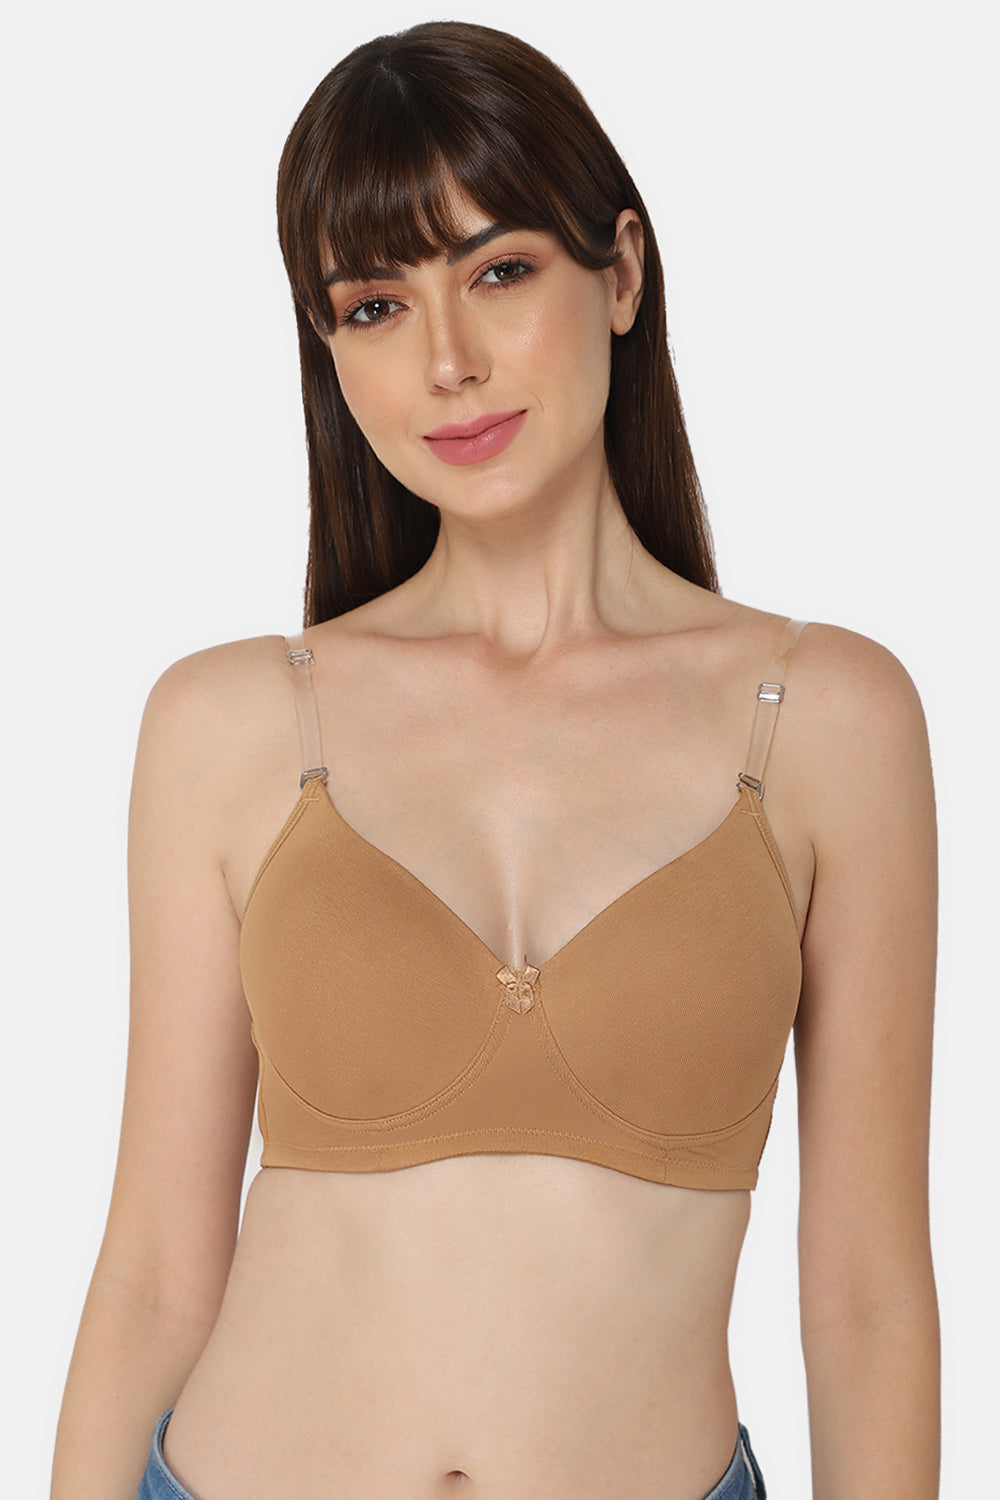 padded bra for girls Size 32 34 36 Imported Bra Fancy Net full coverage bra  padded push up bra for women